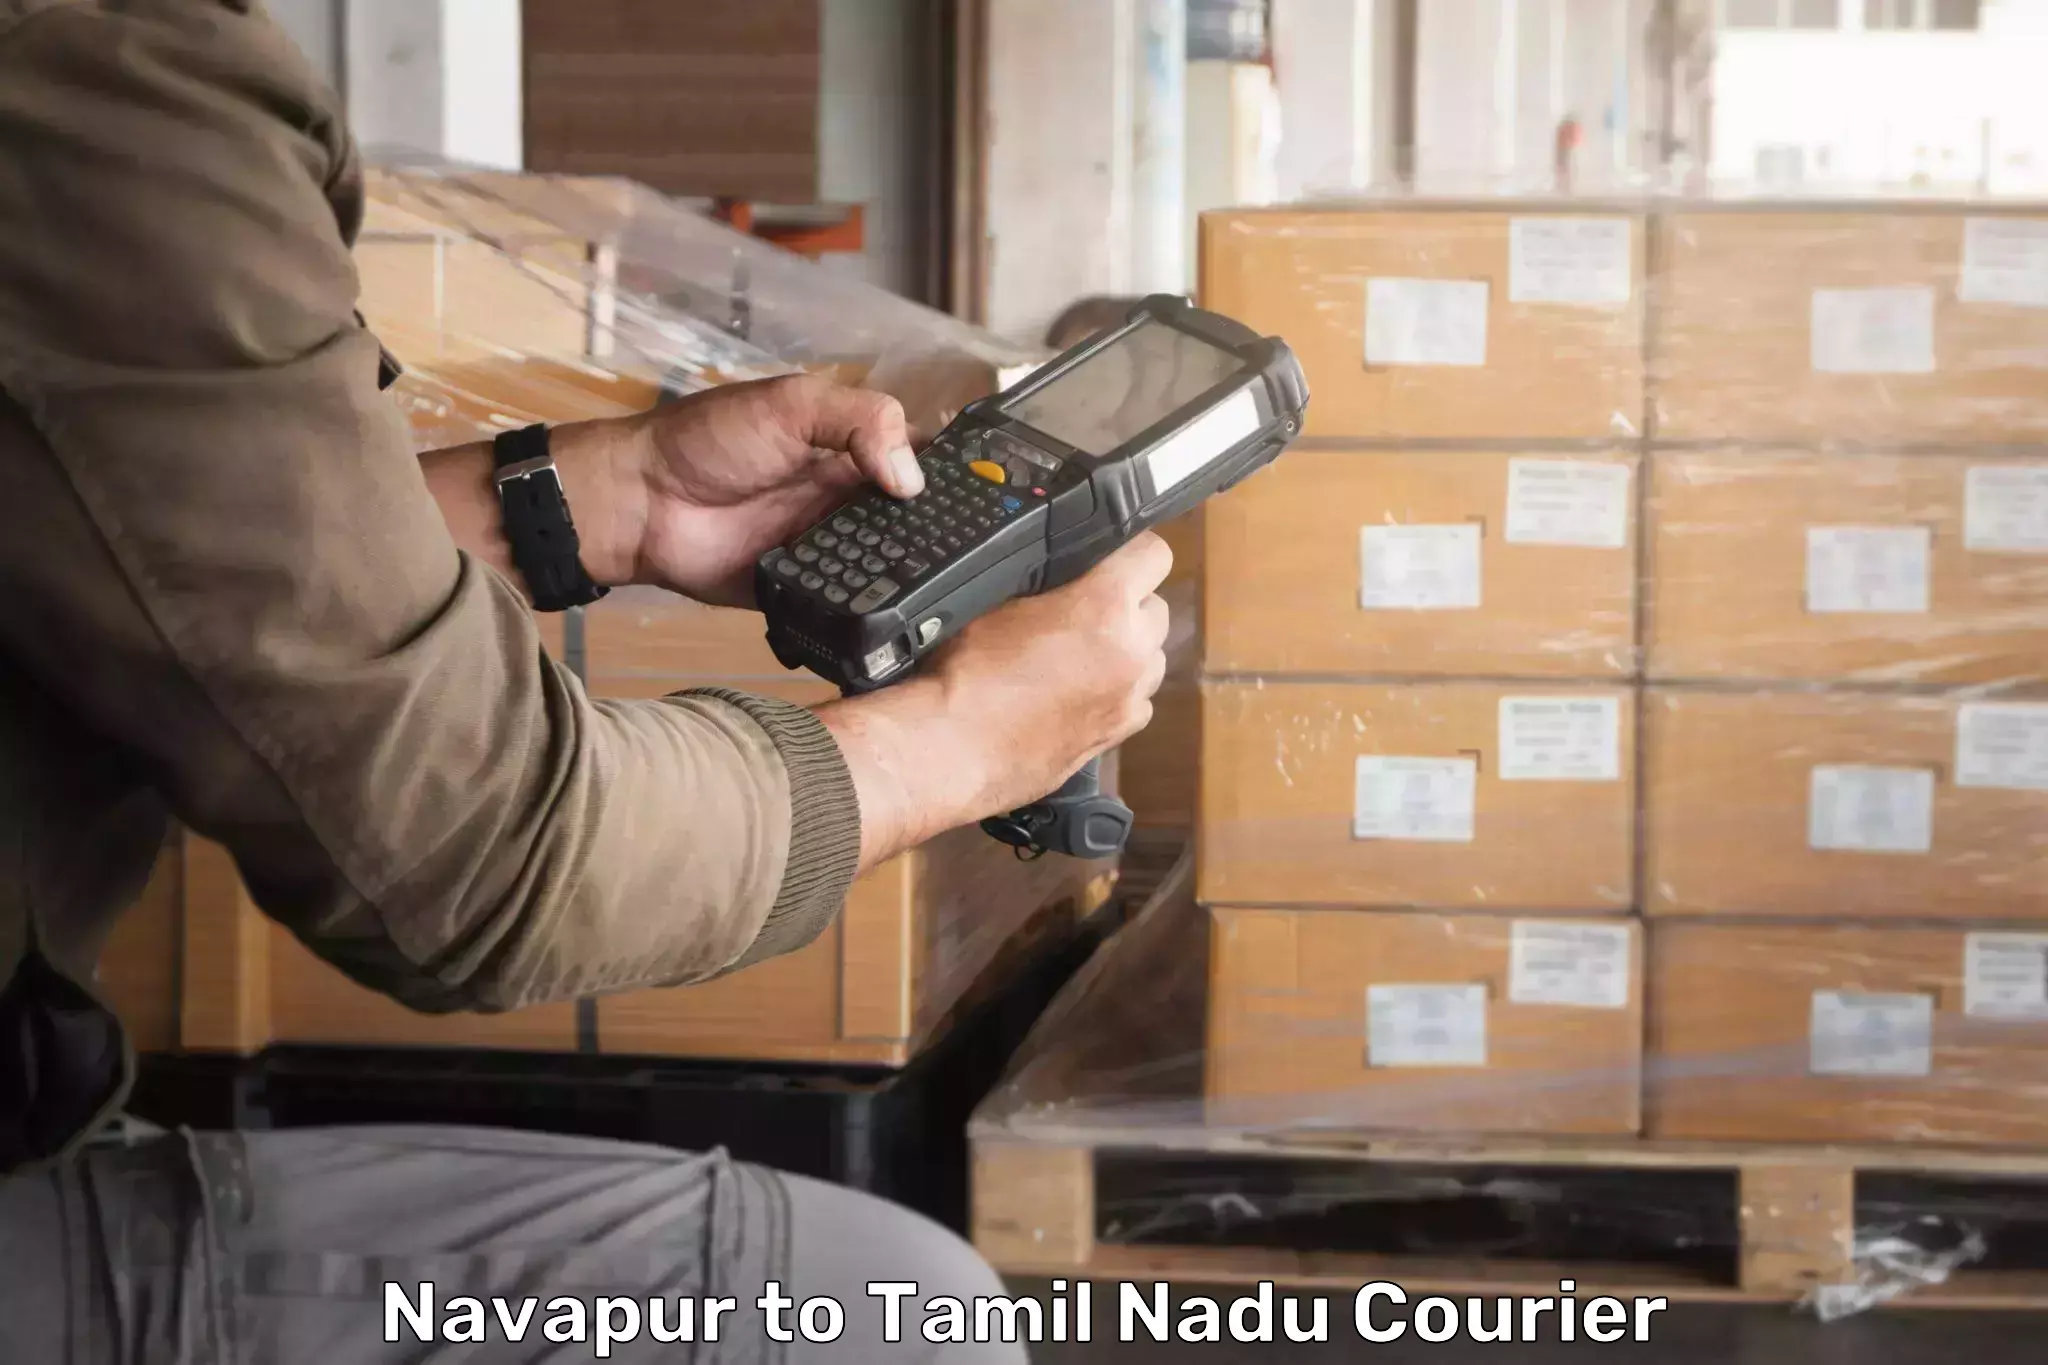 Cargo courier service Navapur to Tiruchendur